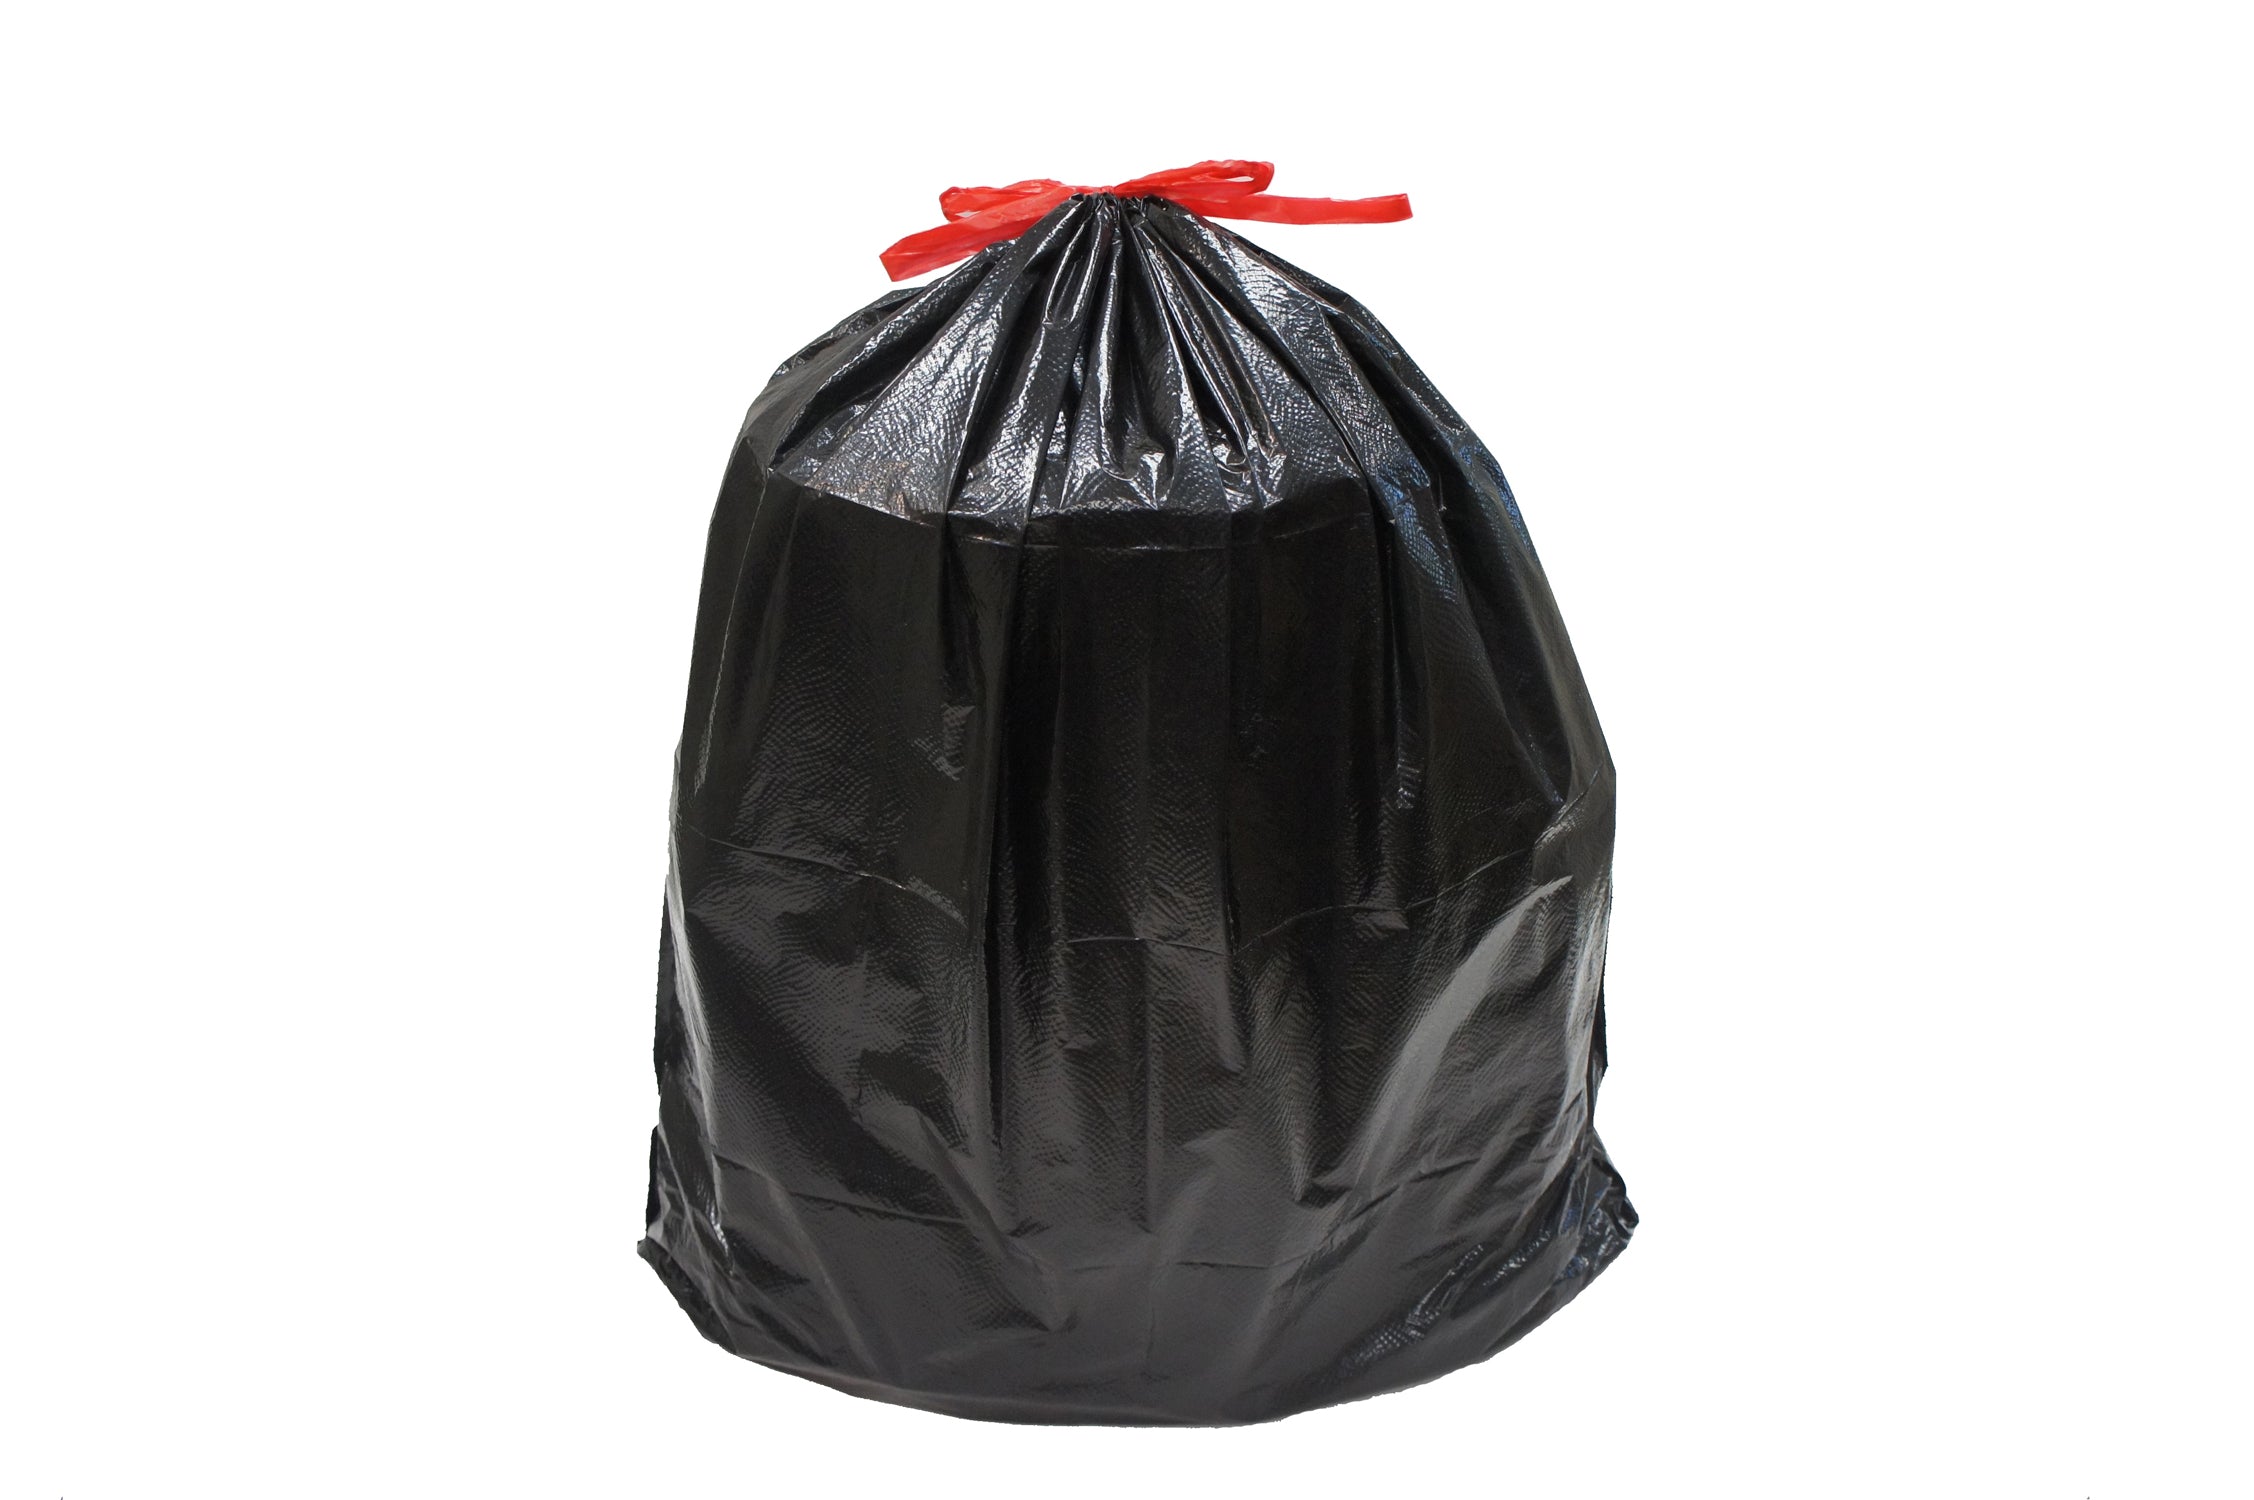 24 Wholesale Trash Bags 15ct - 8 Gallon Drawstring - at 